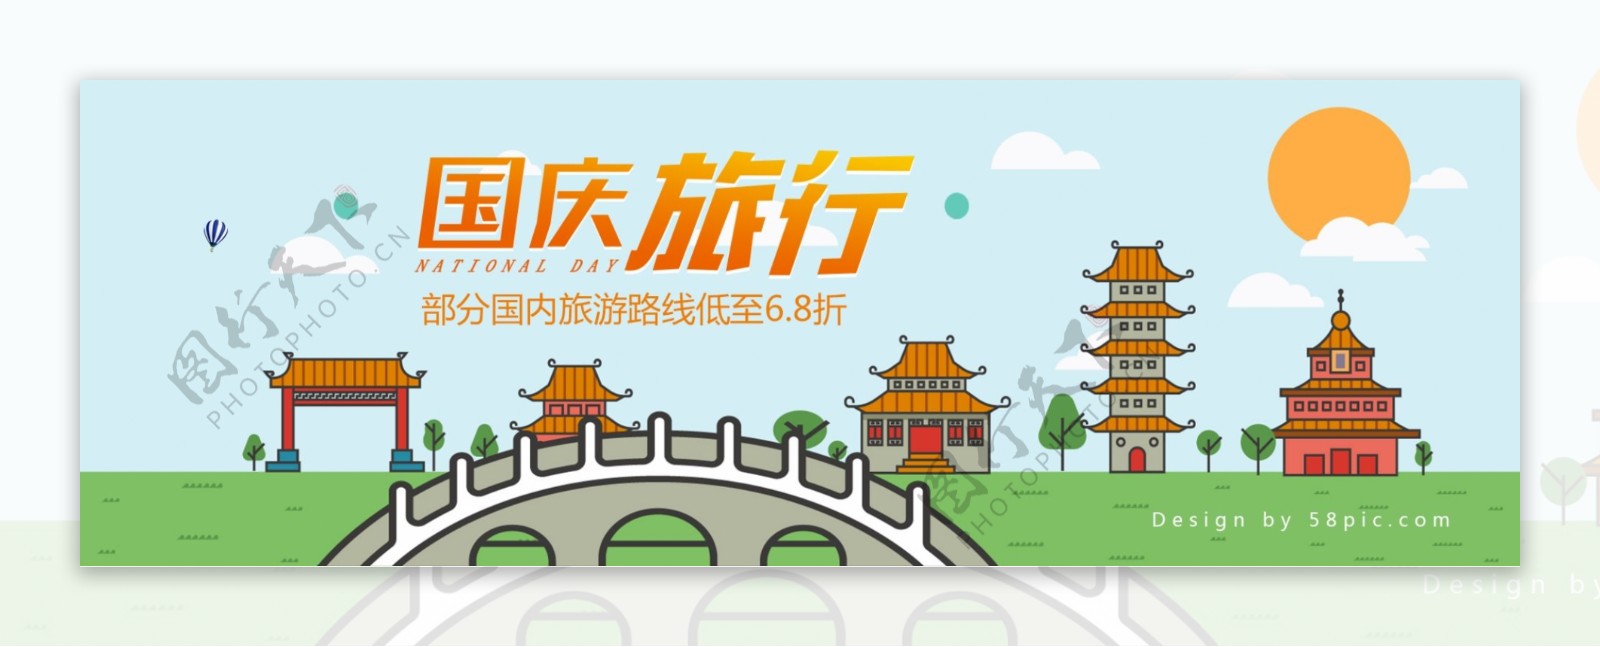 小清新扁平风格国庆旅行淘宝电商海报banner